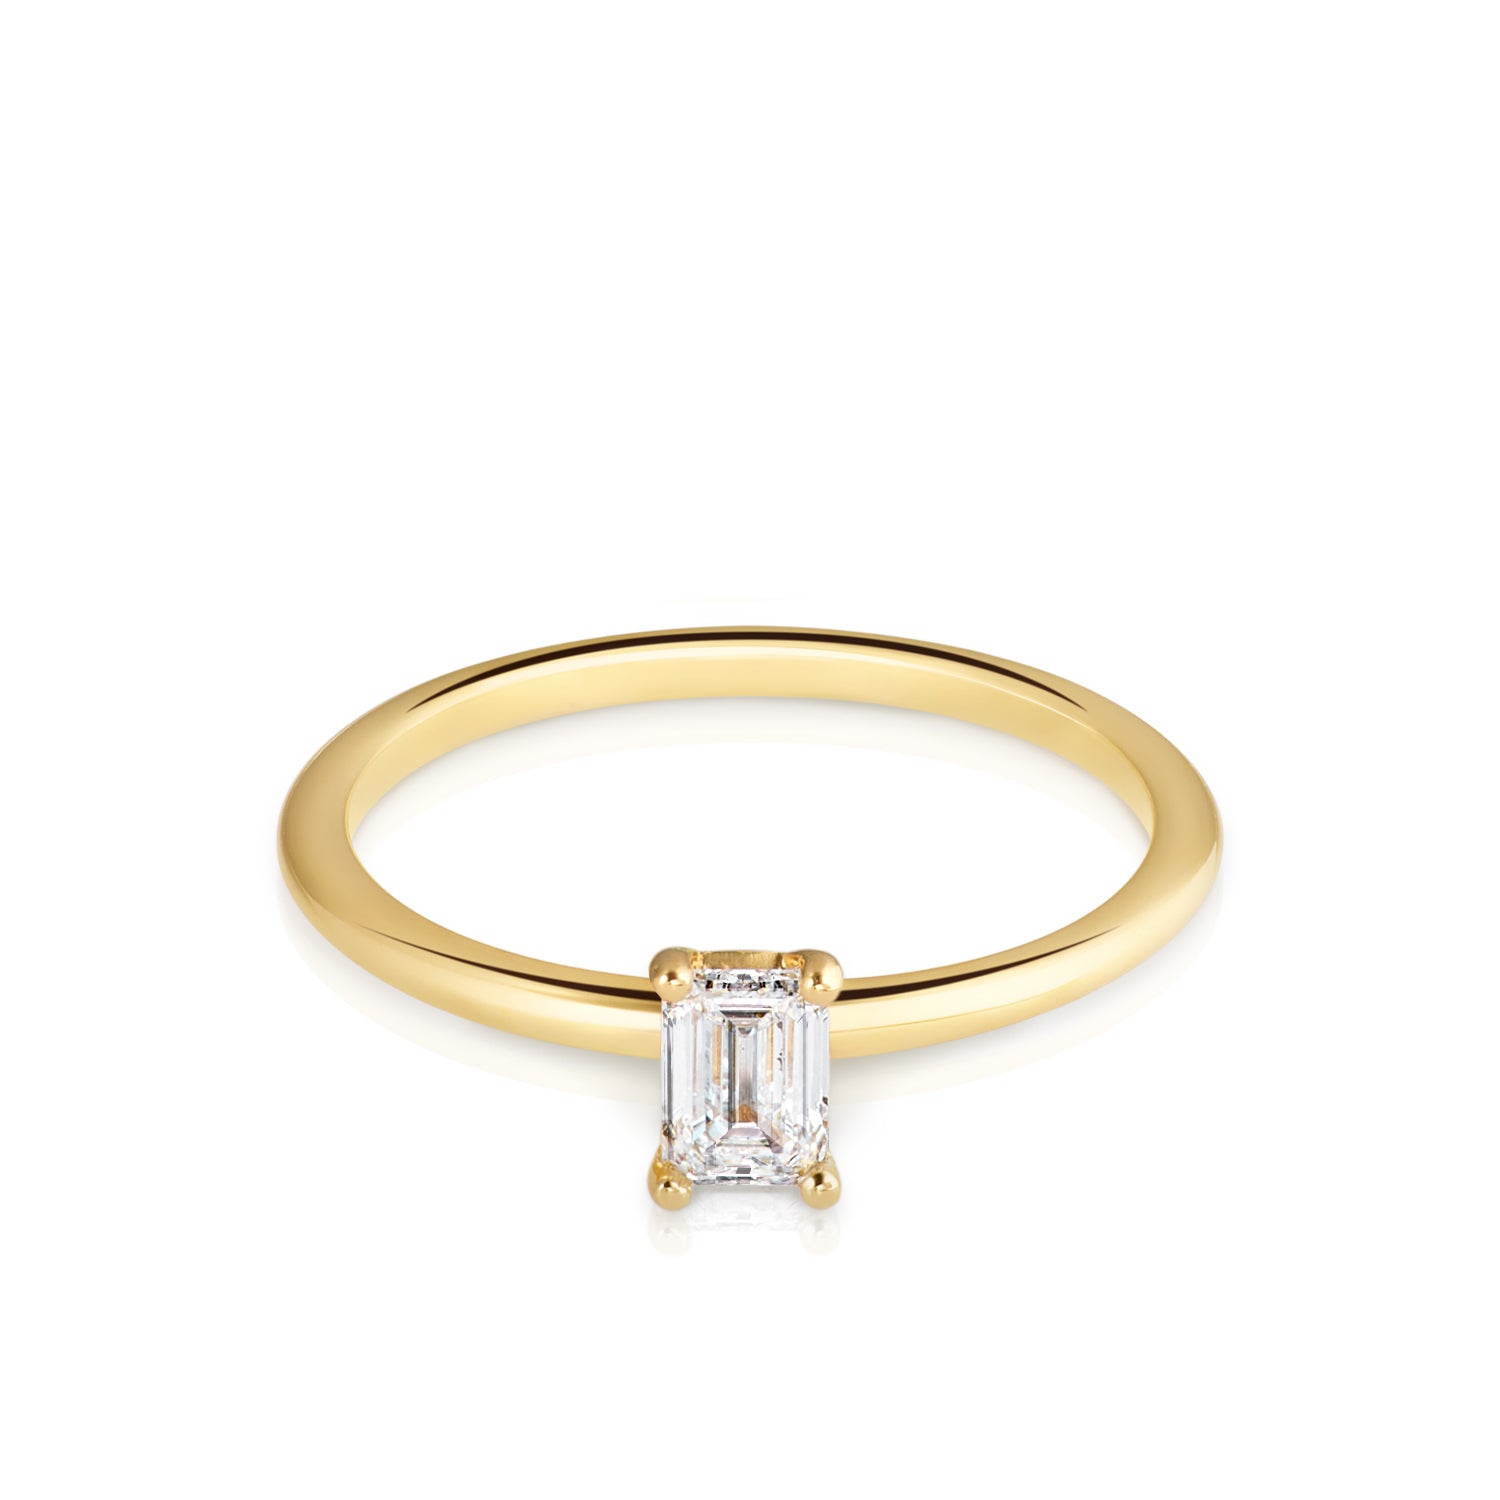 Der Ring aus recykeltem 18 Karat Gelbgold heißt Khloé und besticht durch seine besondere Form und dem wunderschönen Schliff des Labor Diamanten von Zola Berlin.